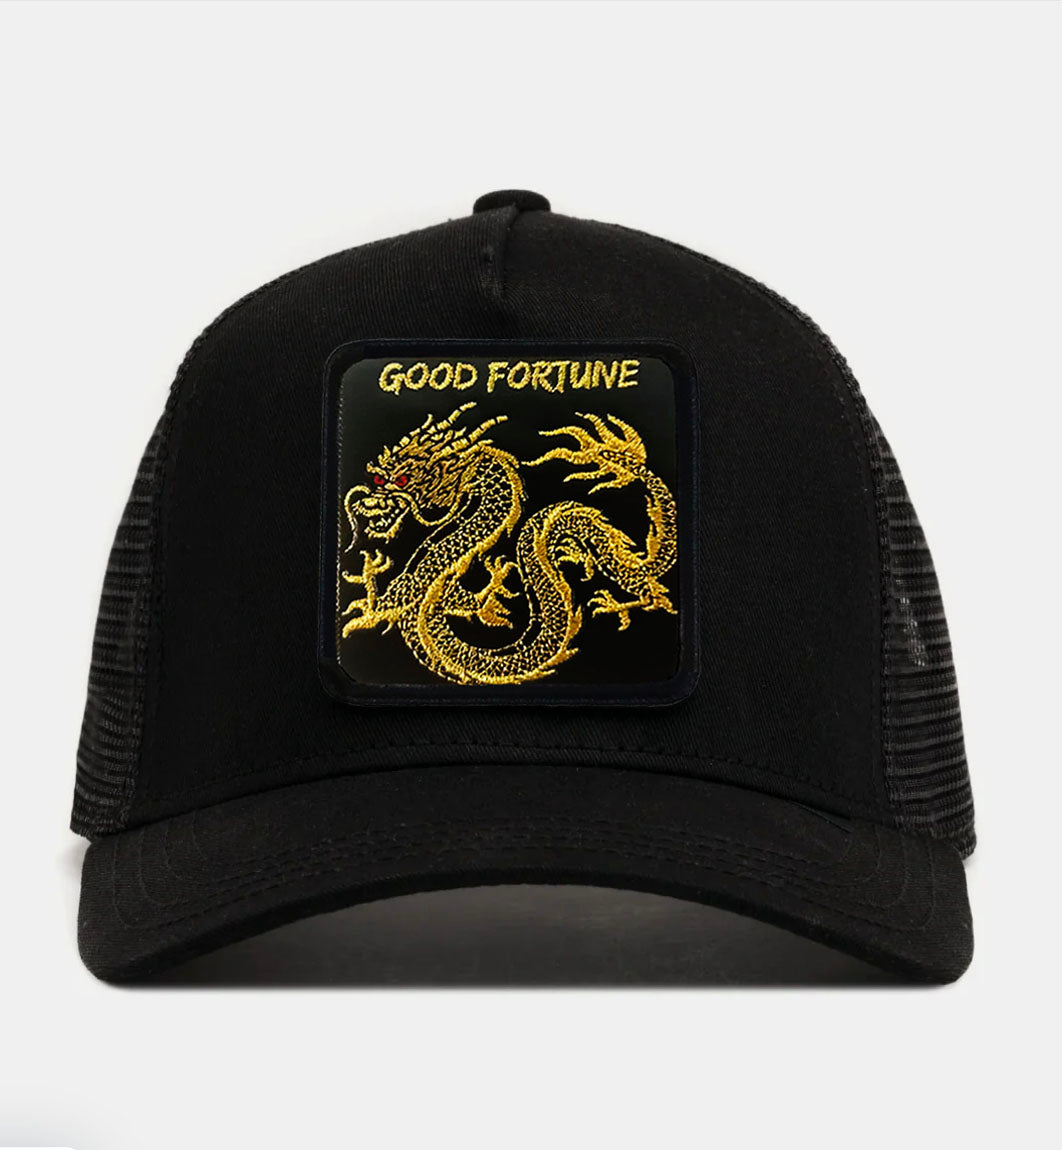 ORIENTAL DRAGON - "GOOD FORTUNE" TRUCKER HAT